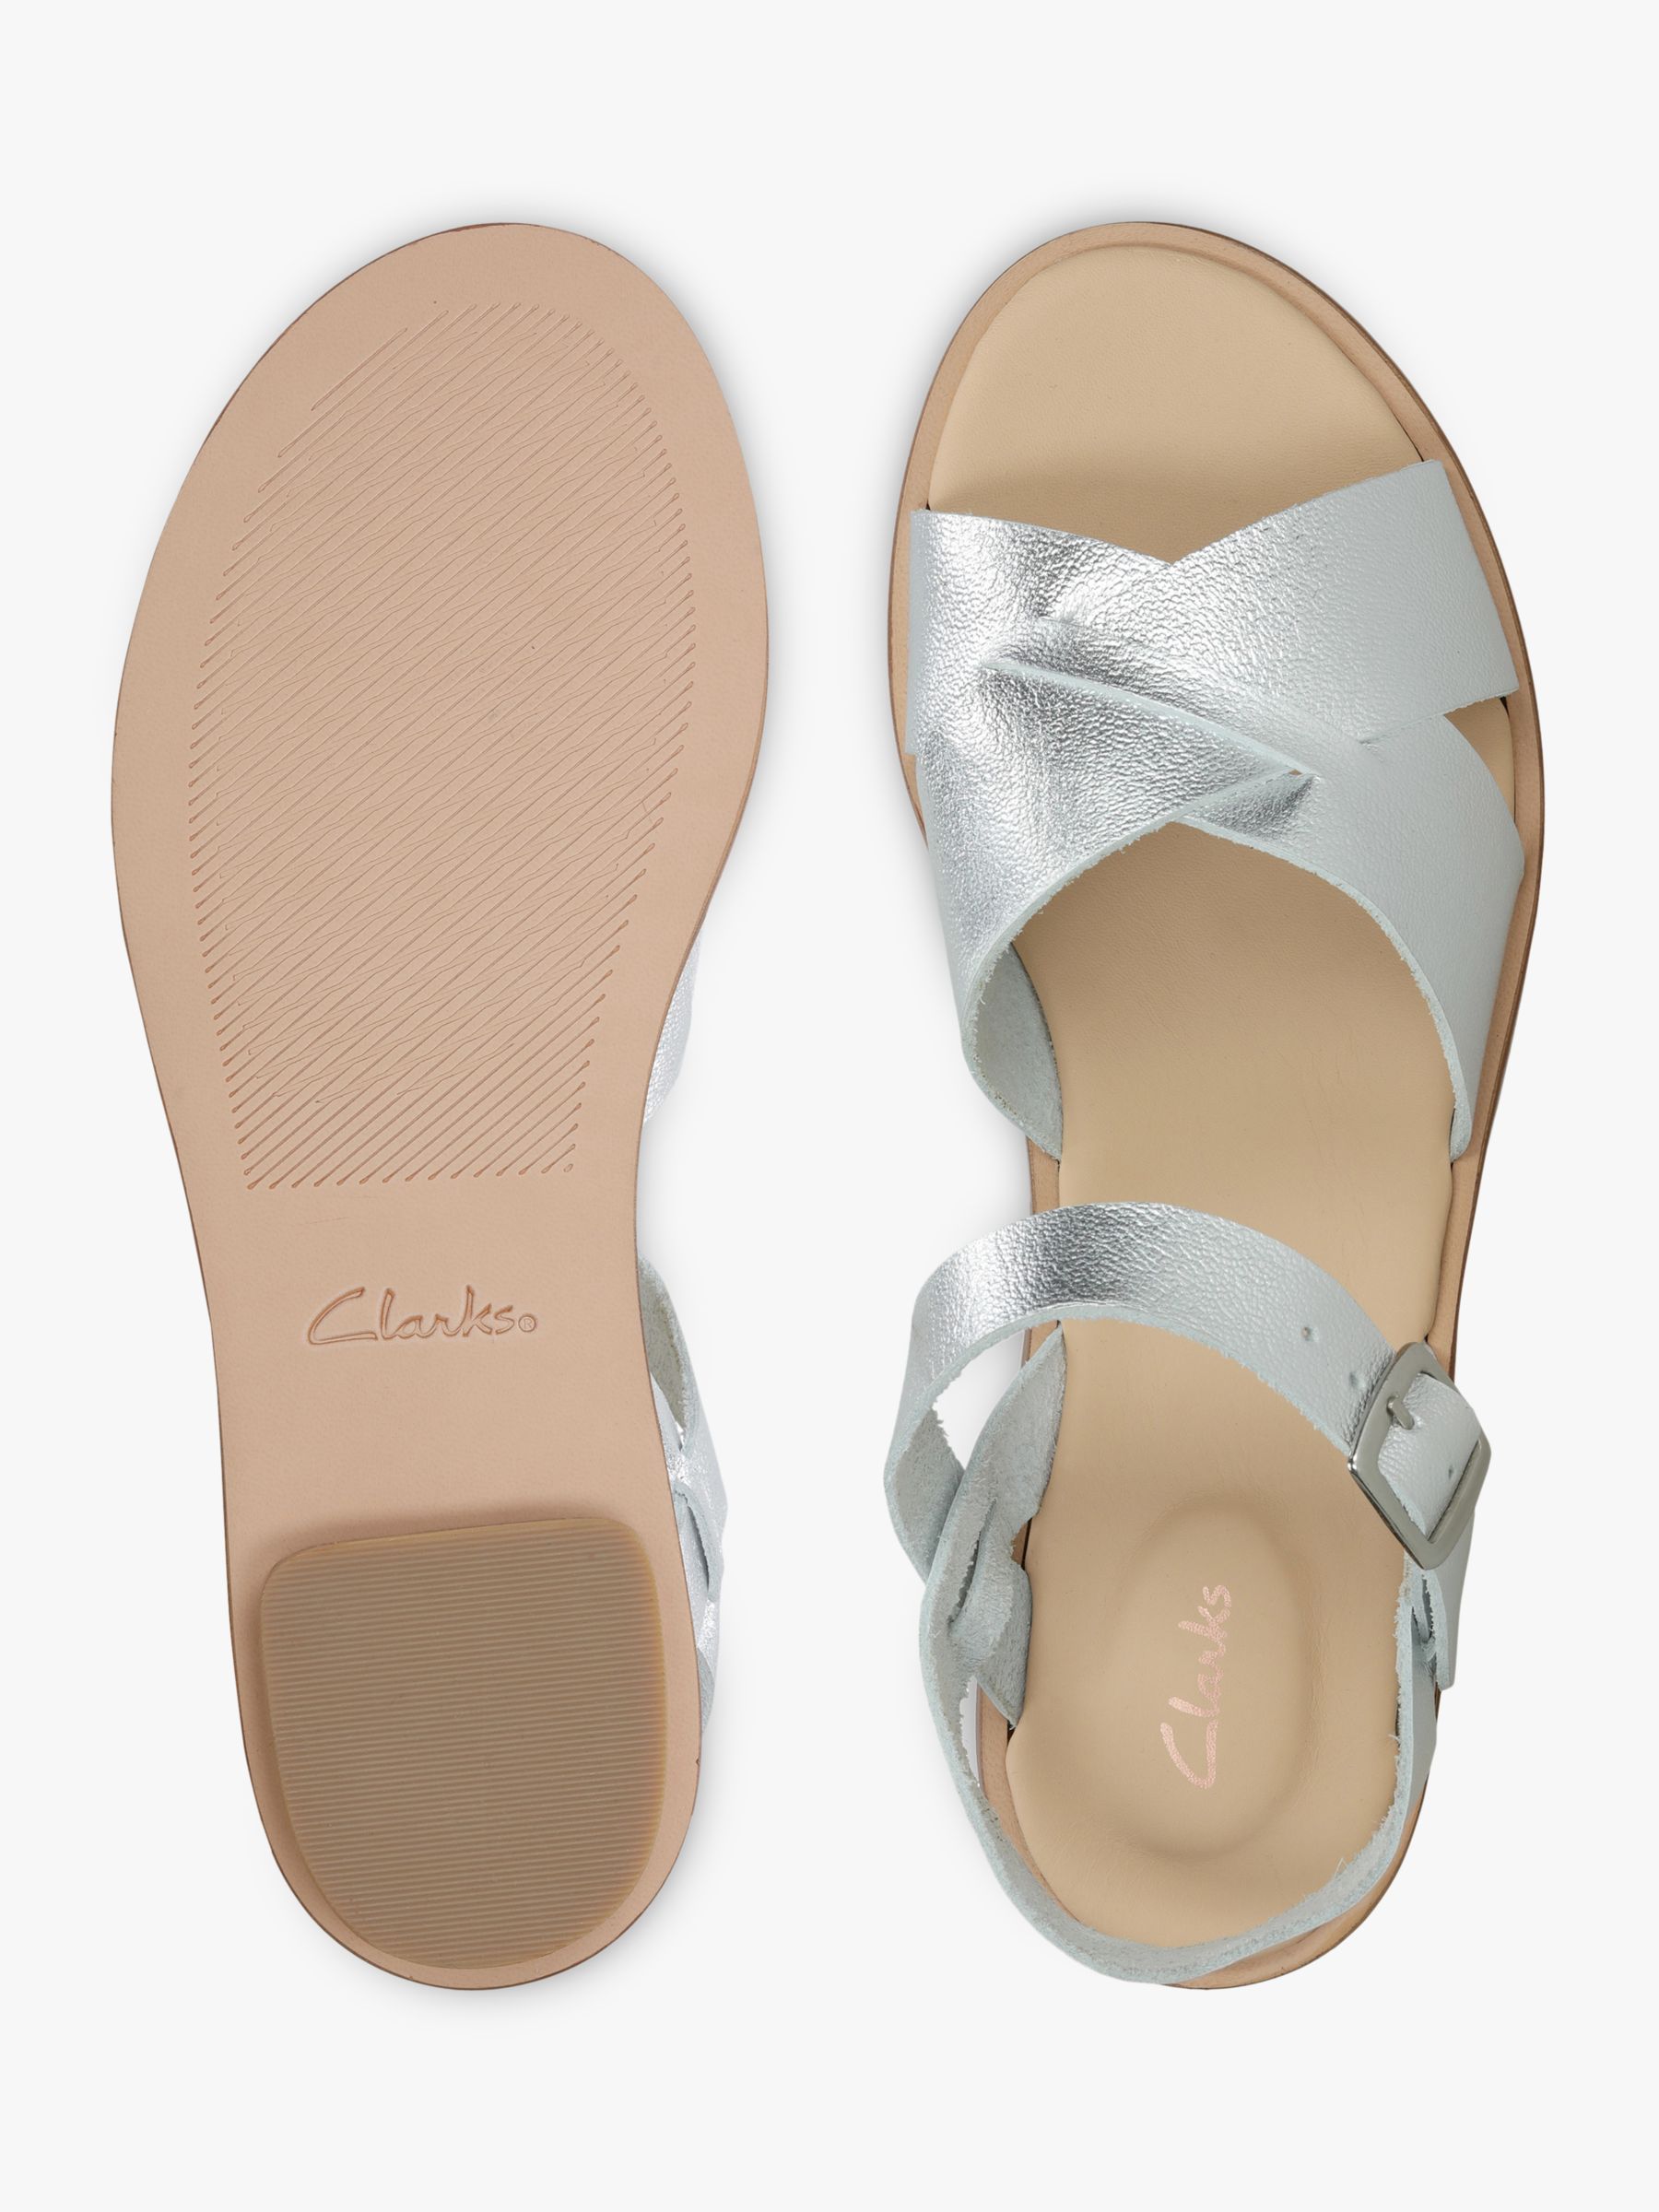 clarks spa leather flip flops